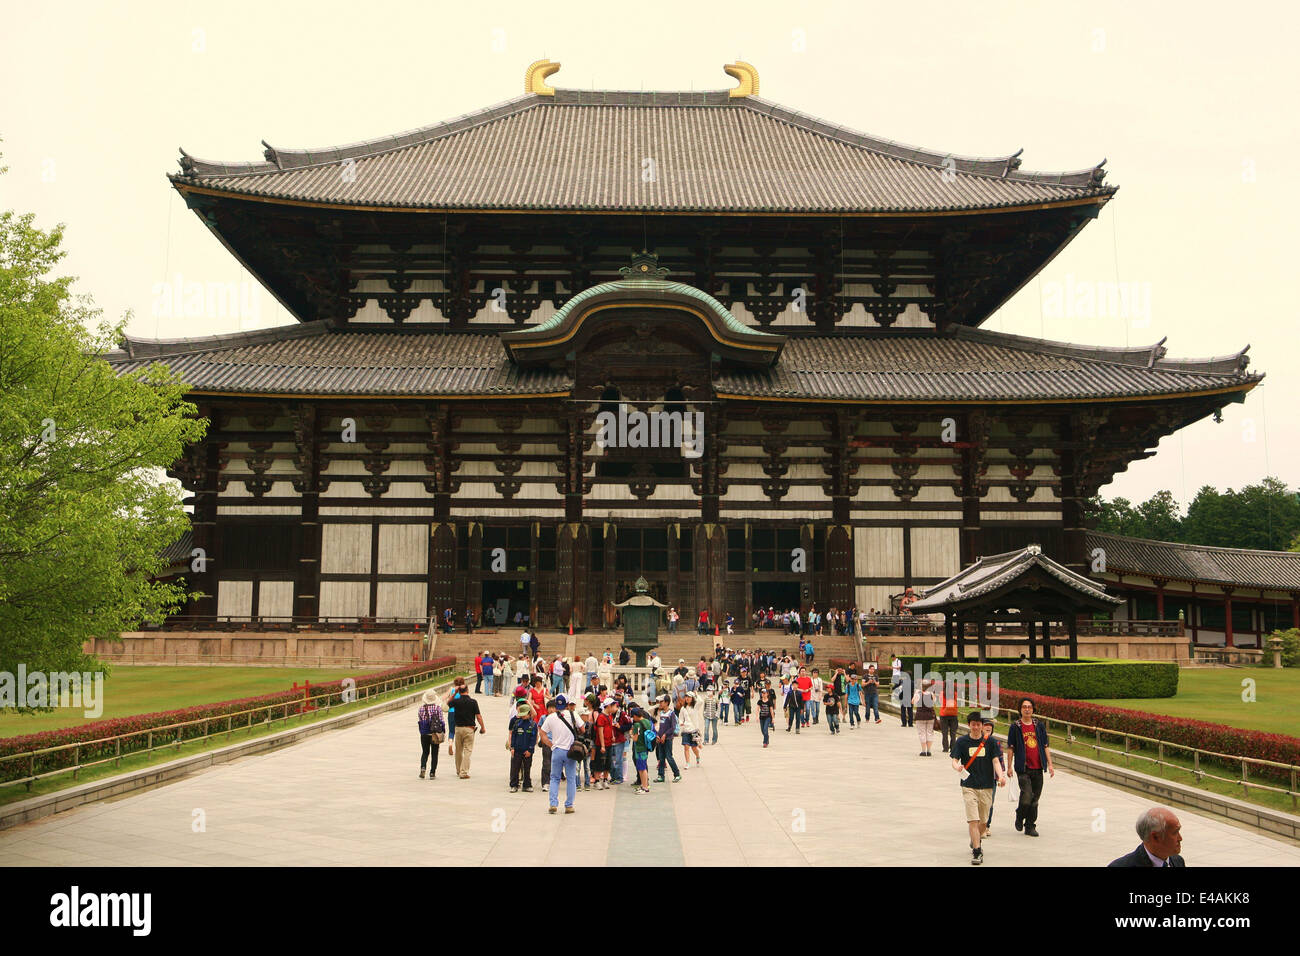 Tempio di Todai-ji di Nara il Giappone che ospita la più grande statua in bronzo di Buddha Vairocana Daibutsu 大仏 Foto Stock